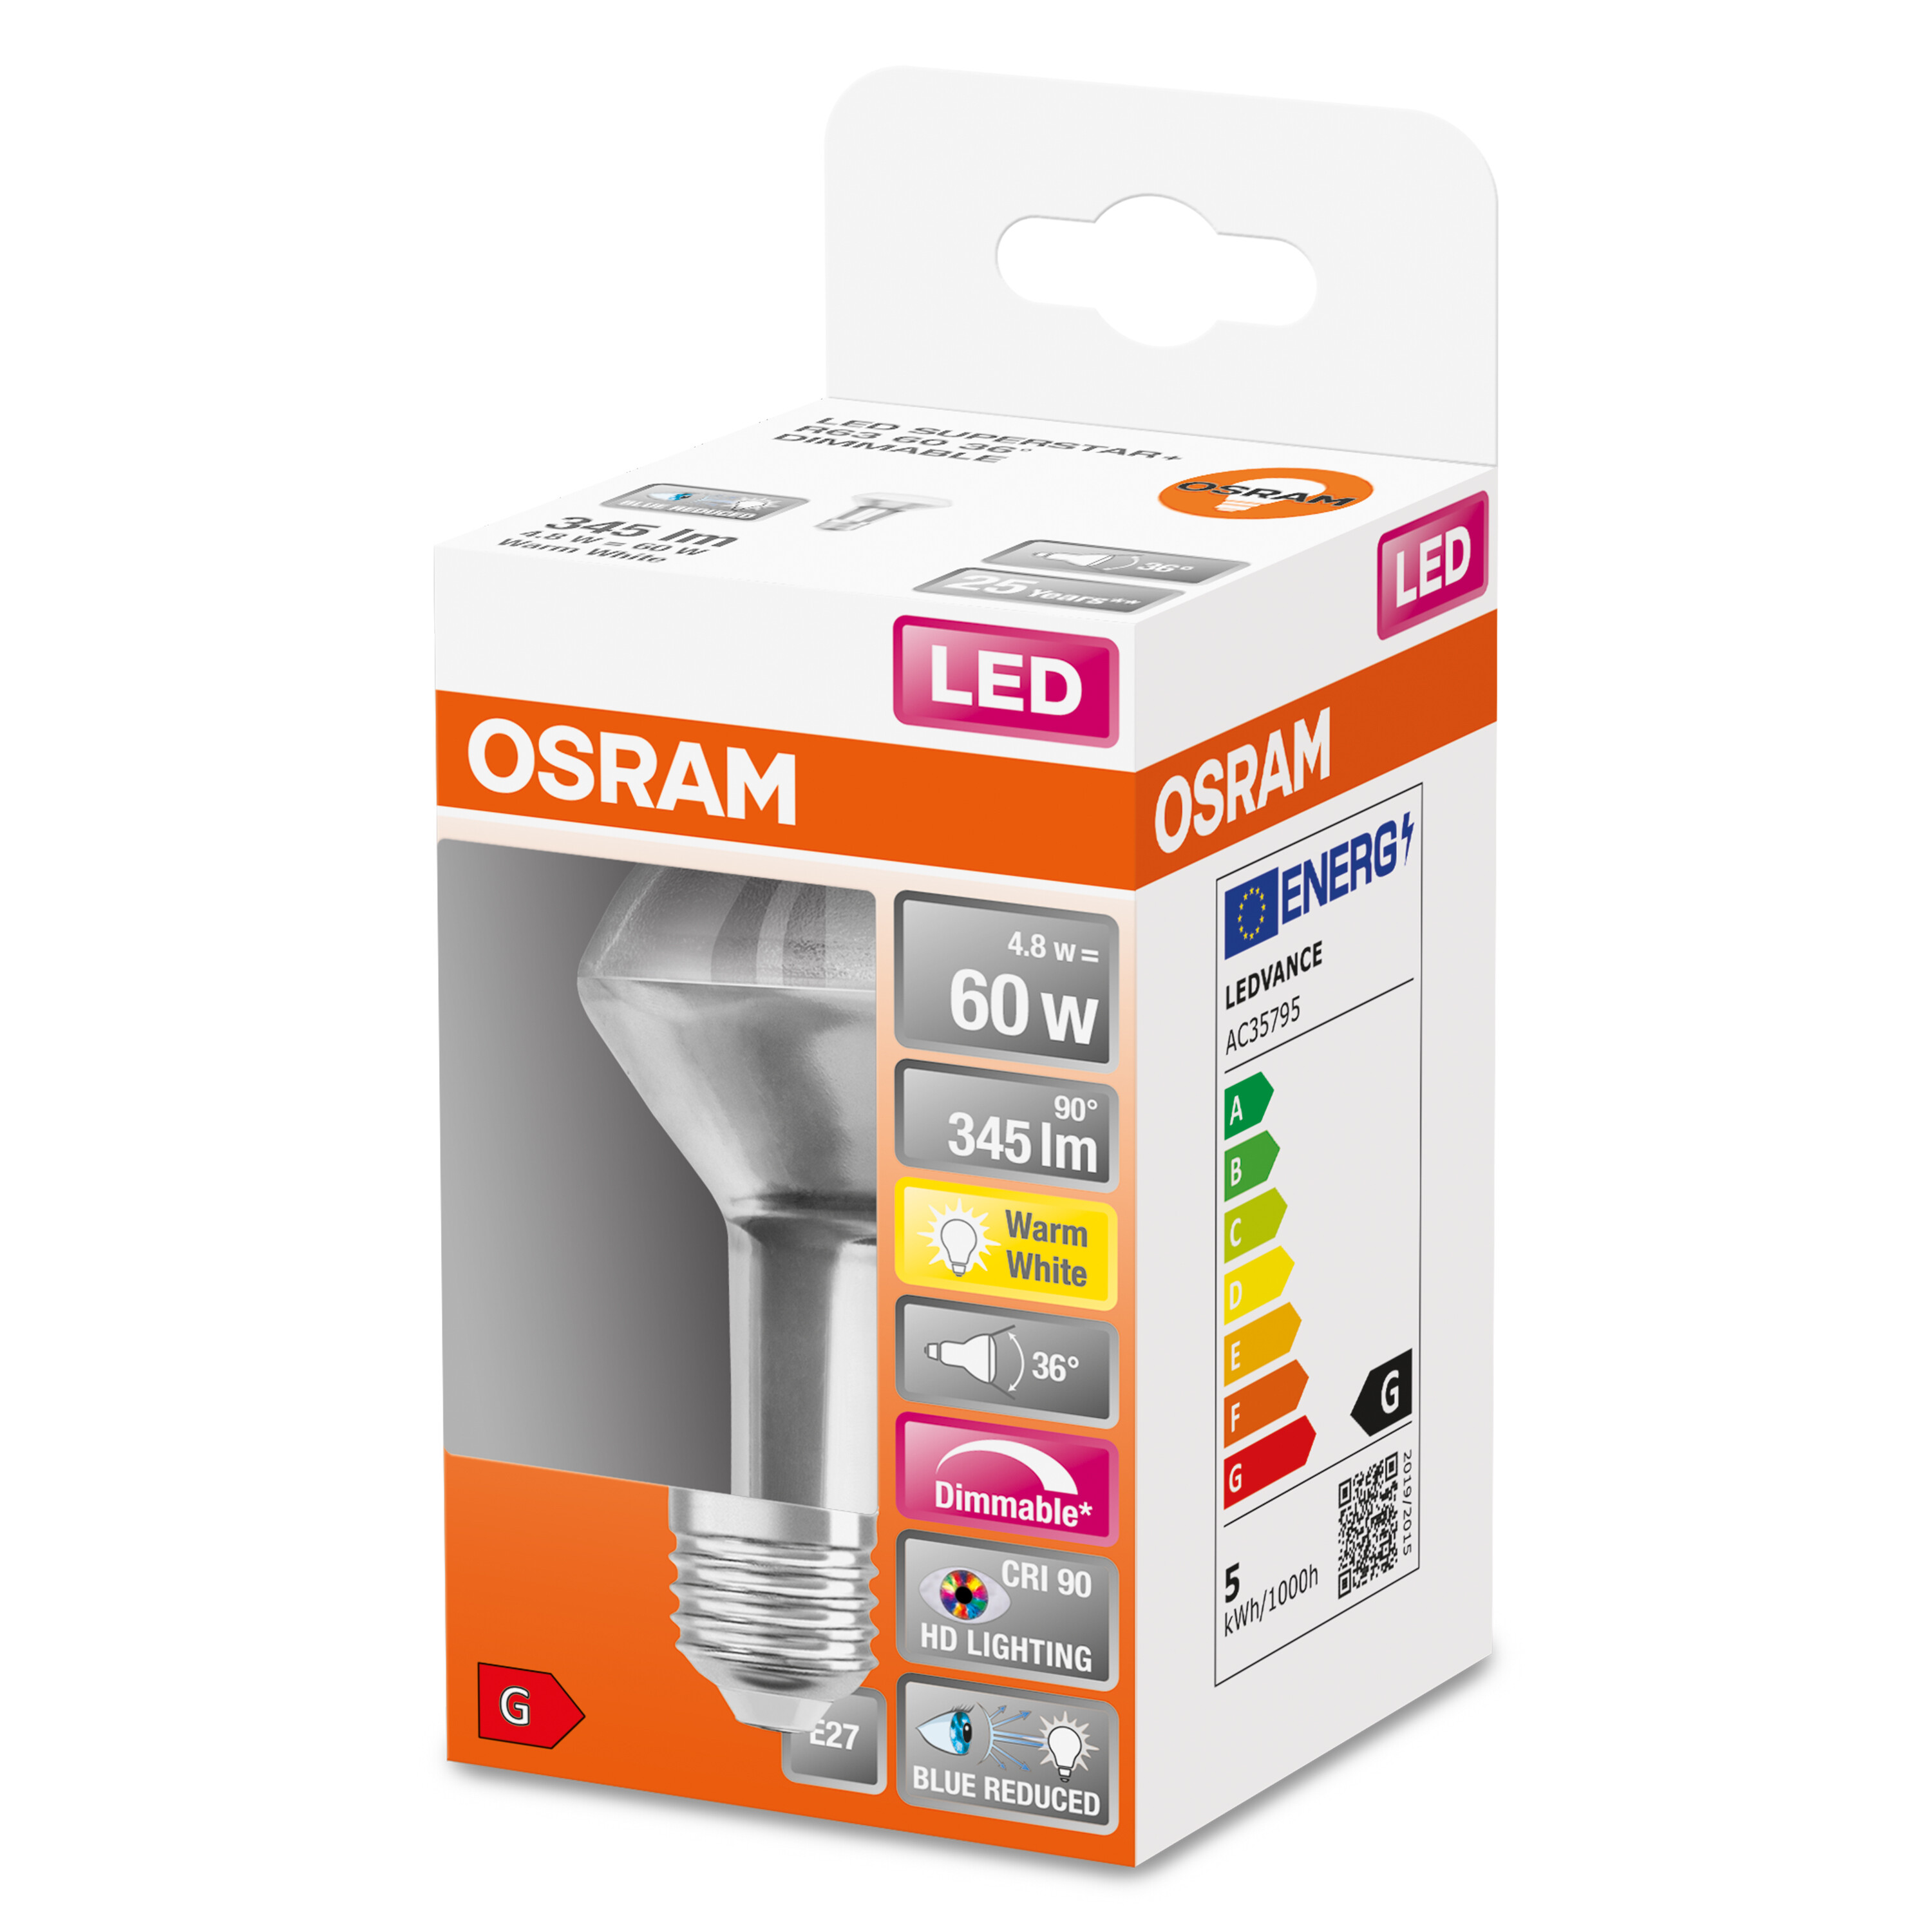 OSRAM  LED SUPERSTAR PLUS R63 345 LED Reflektor-Lampe Warmweiß Lumen